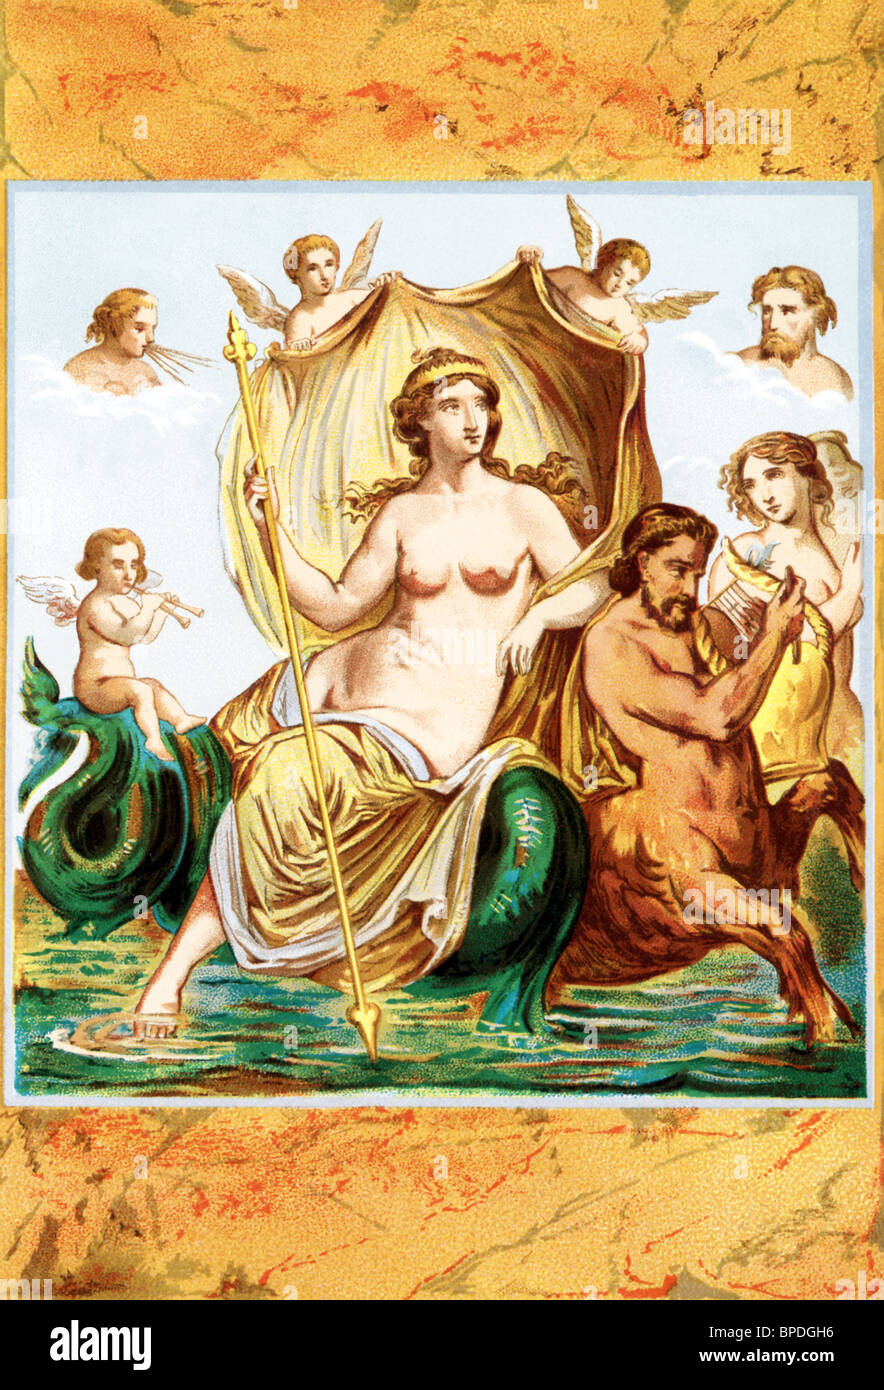 Según la mitología griega, Amphitrite era una diosa del mar, y la esposa de Poseidón, dios del mar. Foto de stock